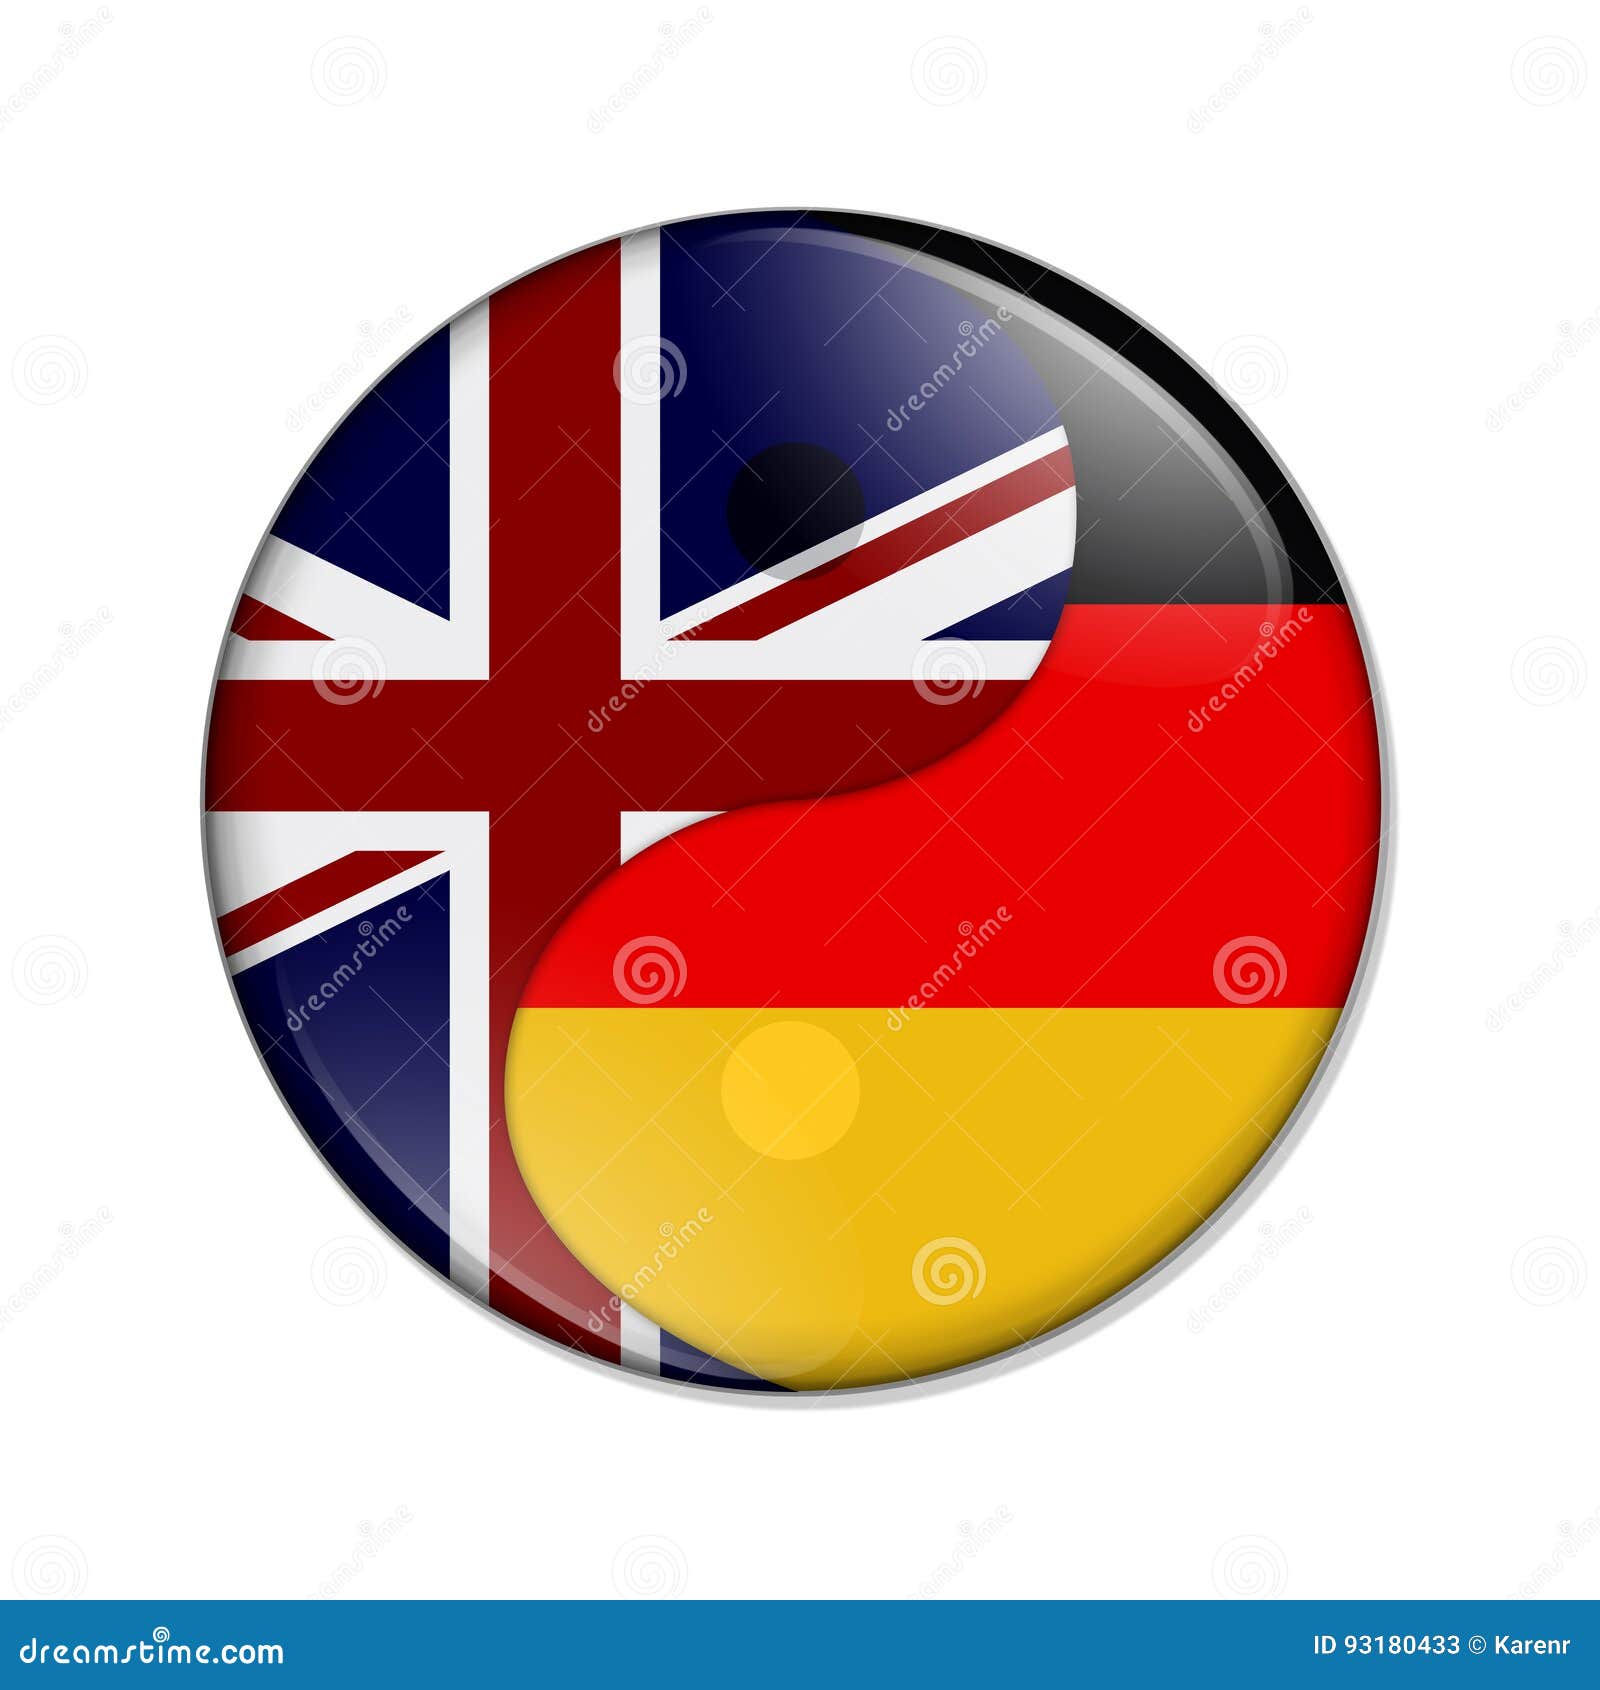 Германия на английском. Английский и немецкий. Английский и немецкий флаг. Германия и Великобритания. Британия и Германия.